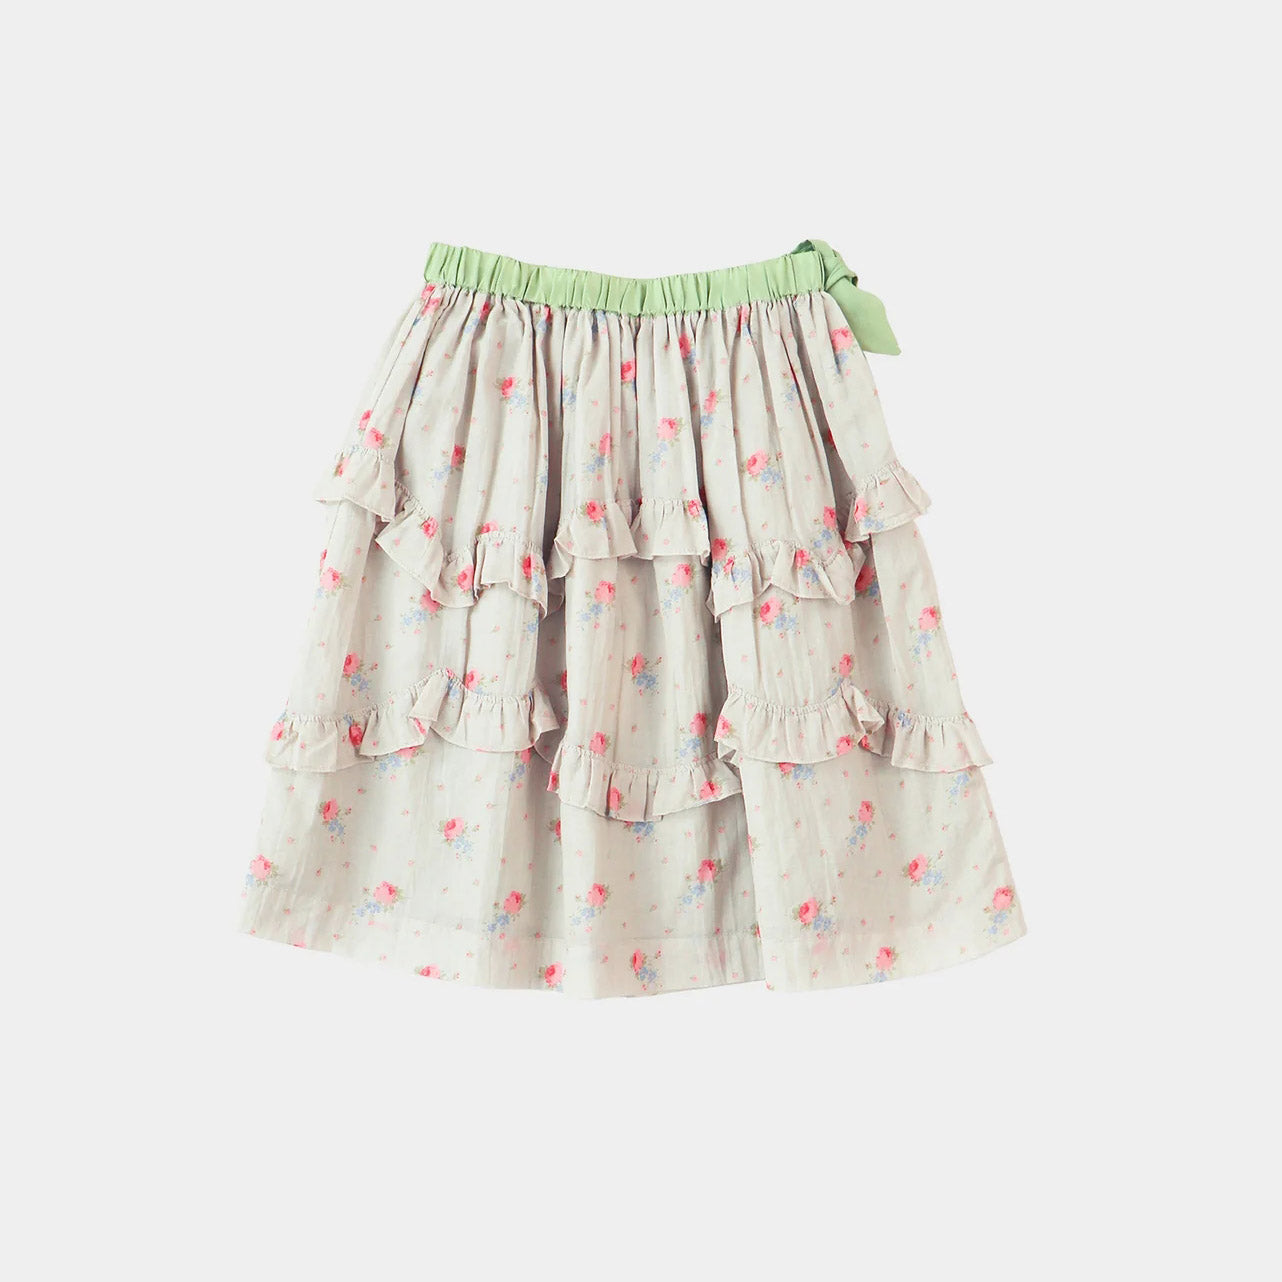 Girls Pink Flower Cotton Skirt